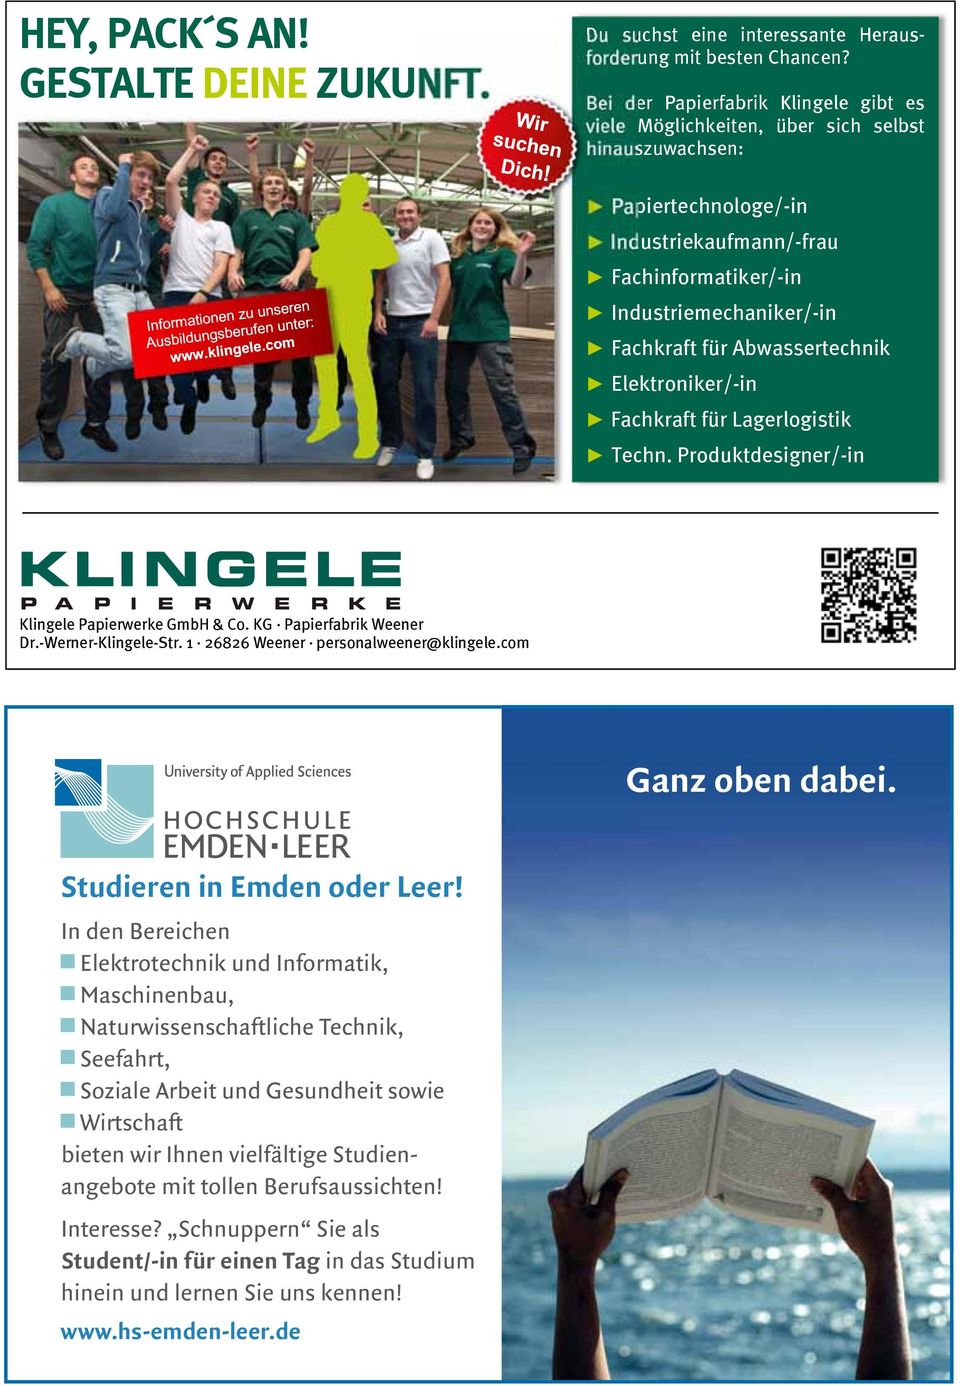 Abwassertechnik Elektroniker/-in Fachkraft für Lagerlogistik Techn. Produktdesigner/-in Klingele Papierwerke GmbH & Co. KG Papierfabrik Weener Dr.-Werner-Klingele-Str.